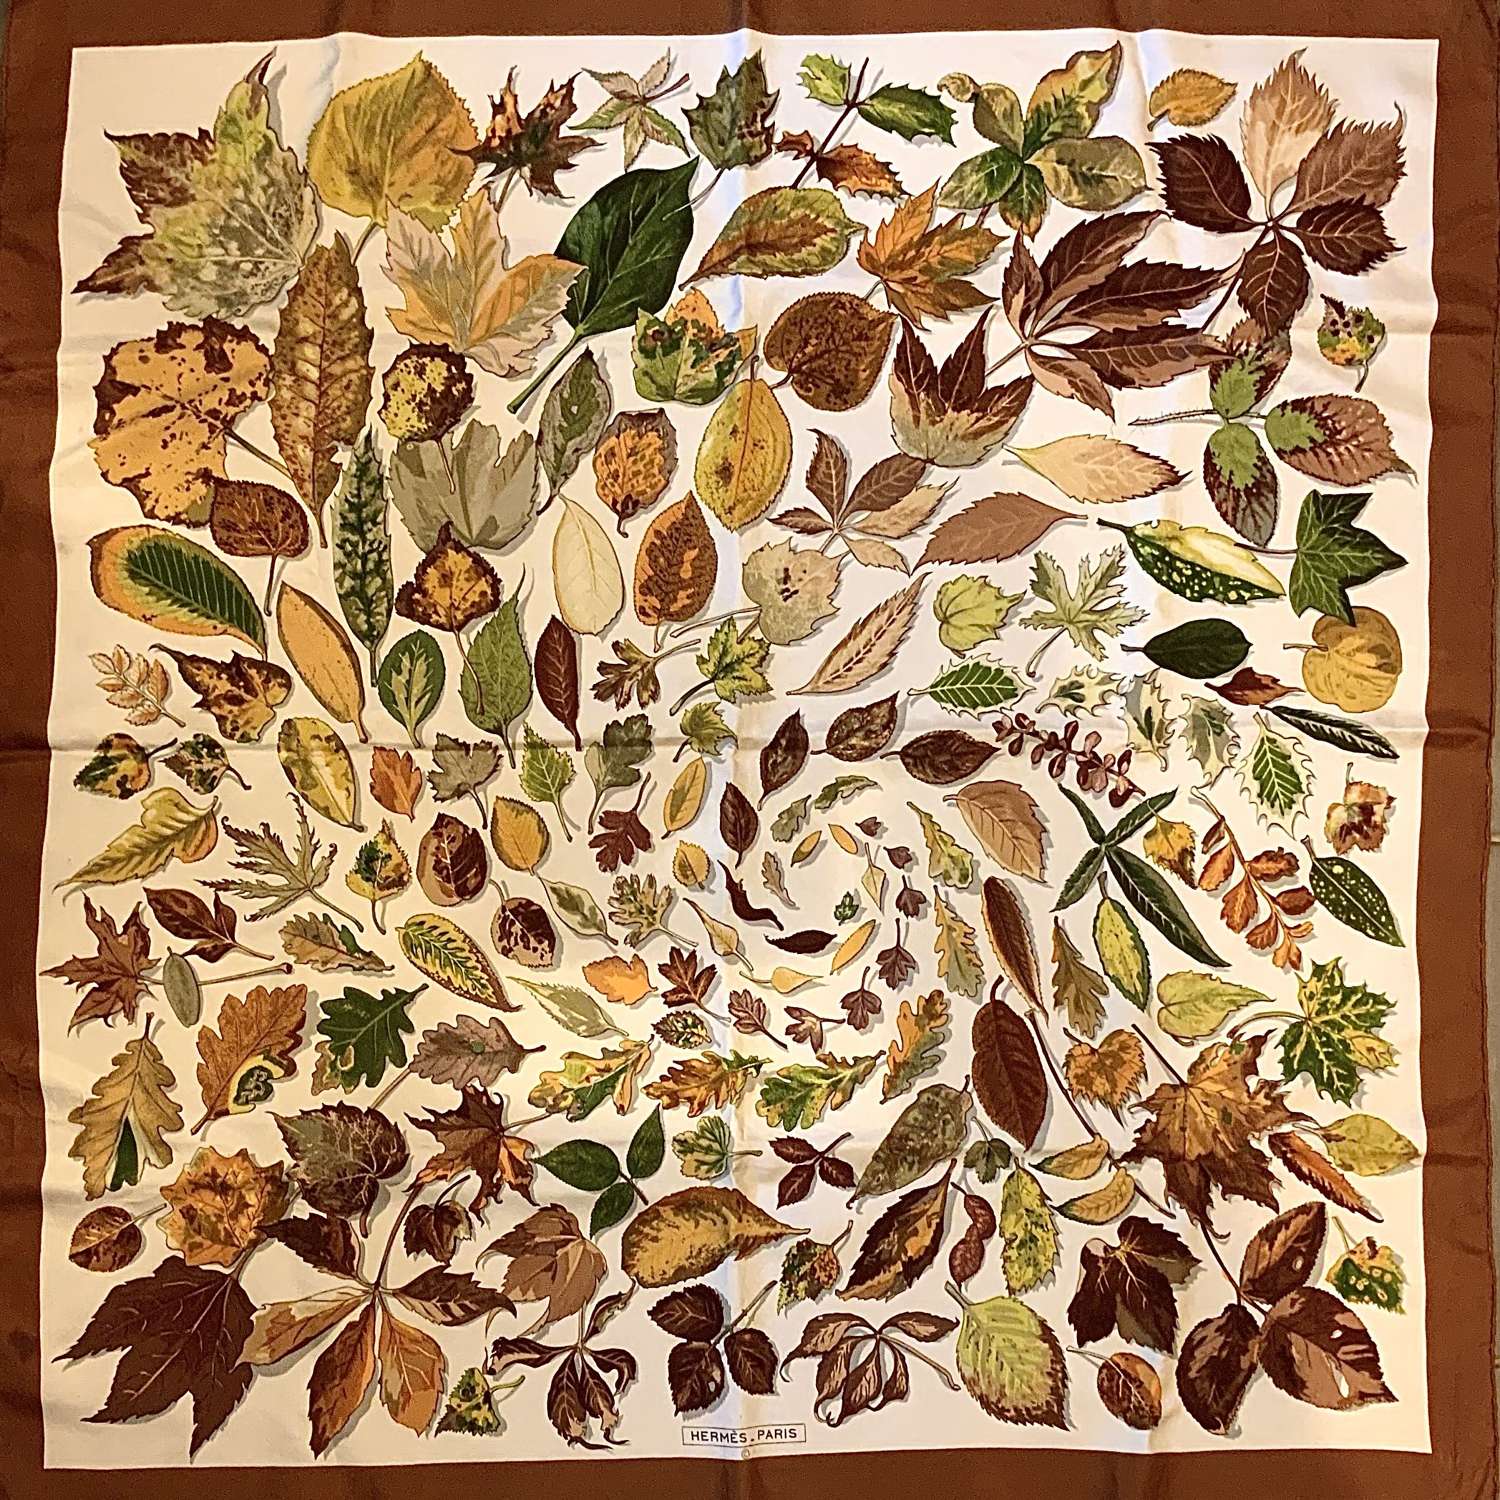 Hermès Silk Scarf “Feuilles D'Automne (Tourbillons)” (Autumn Leaves)